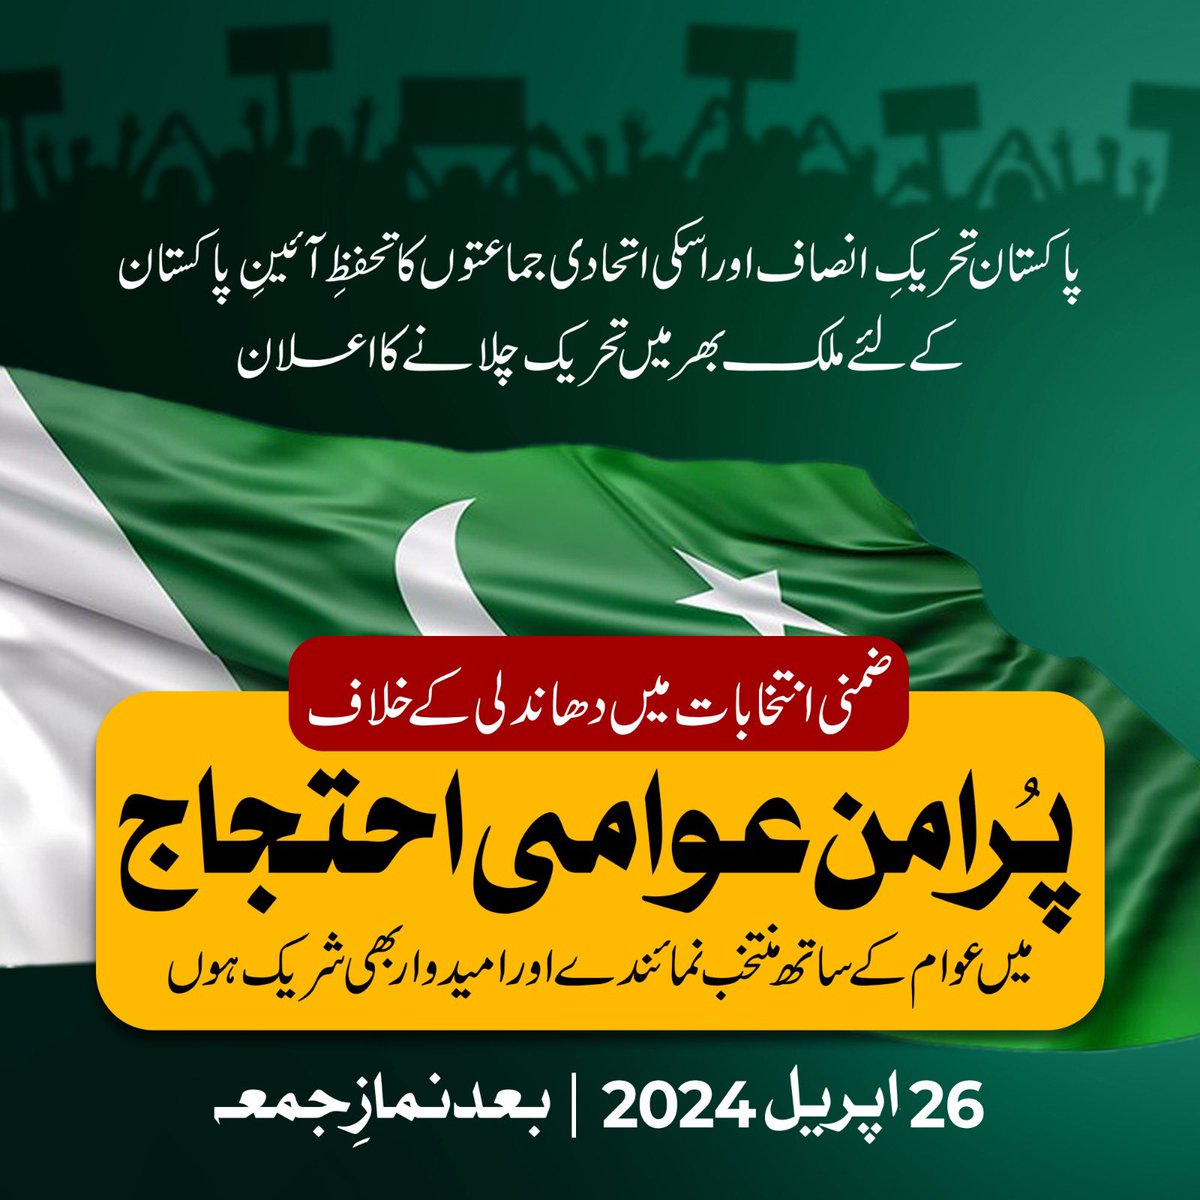 26 اپریل 2024 بعد نماز جمعہ 
نکلو پاکستان کی خاطر!!

#ProtestOnFriday